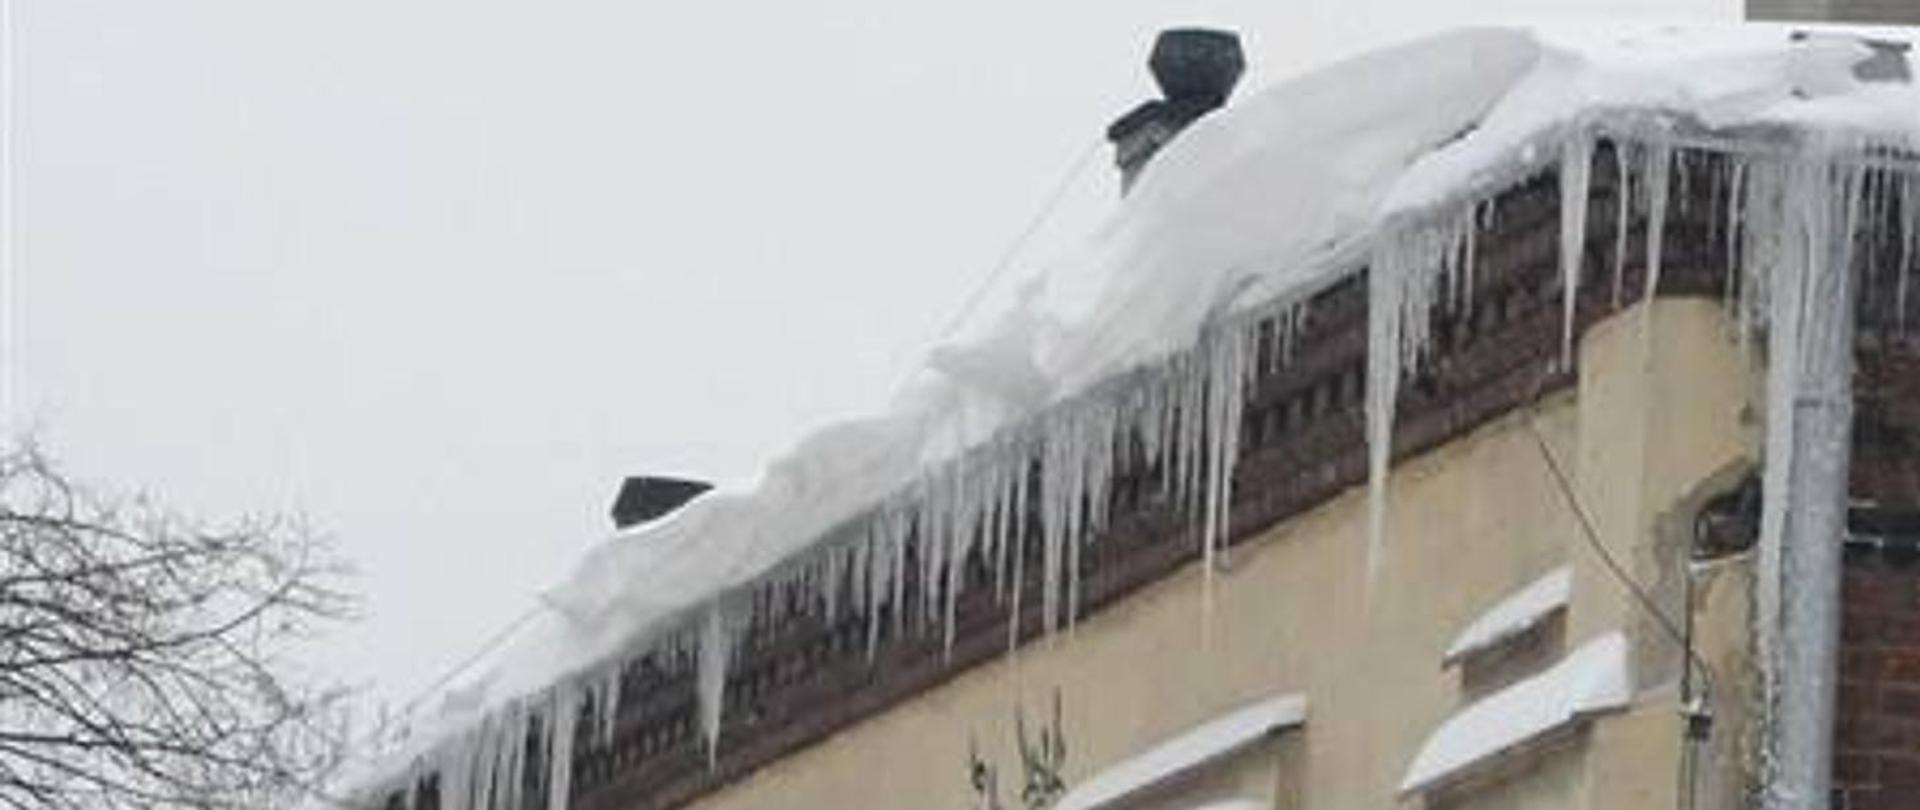 Zdjęcie przedstawia zalegający śnieg i nawisów lodowych na dachu budynku